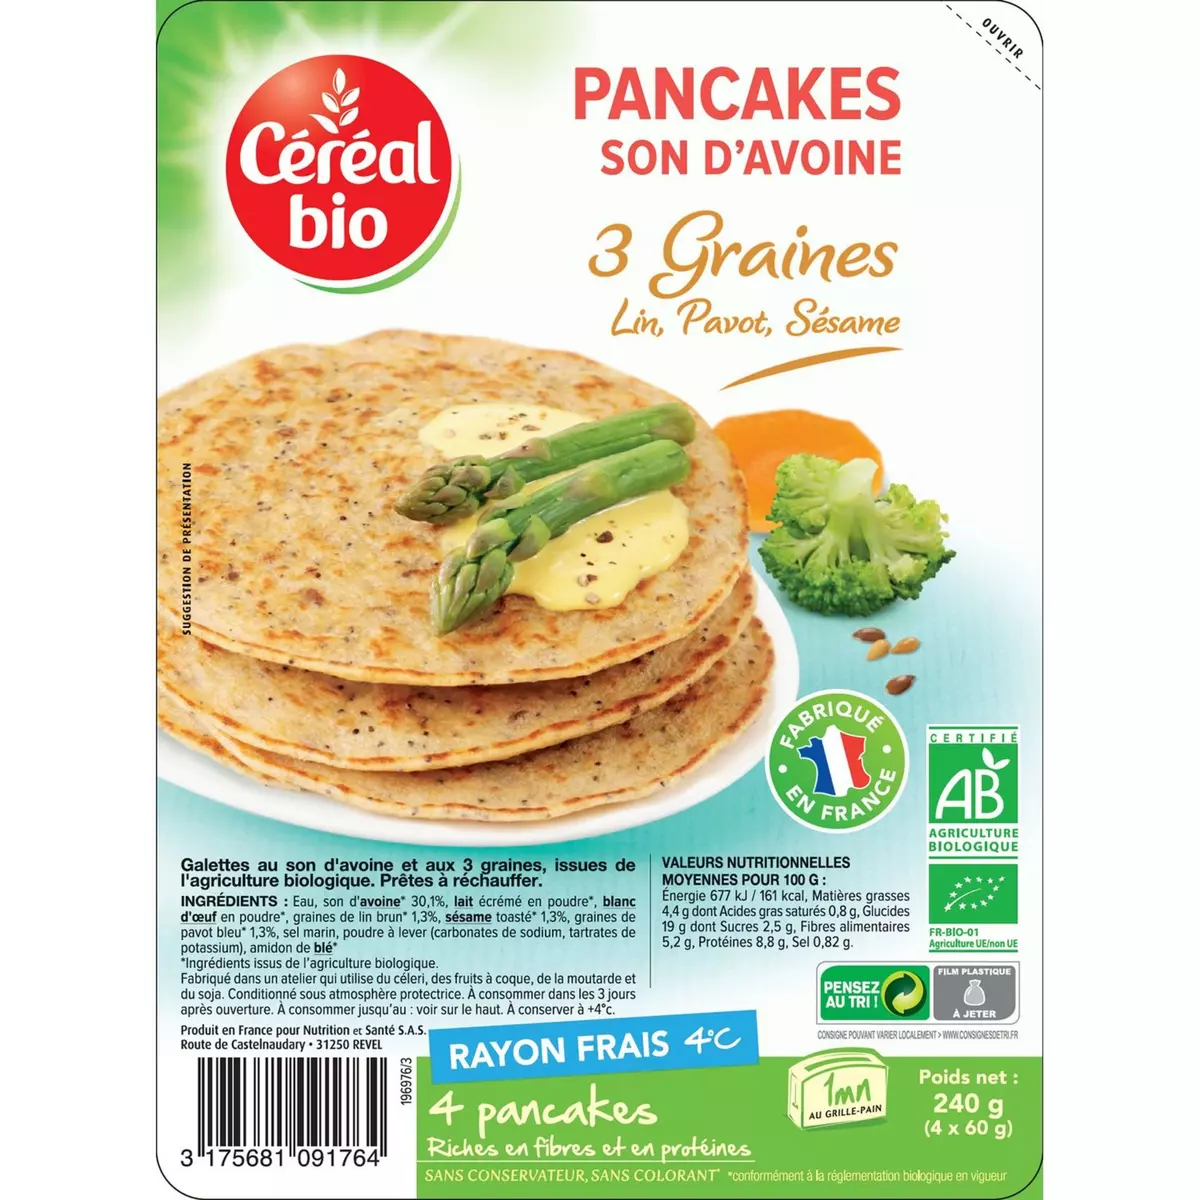 CÉRÉAL BIO Pancakes au son d'avoine aux 3 graines bio 4 pièces 240g